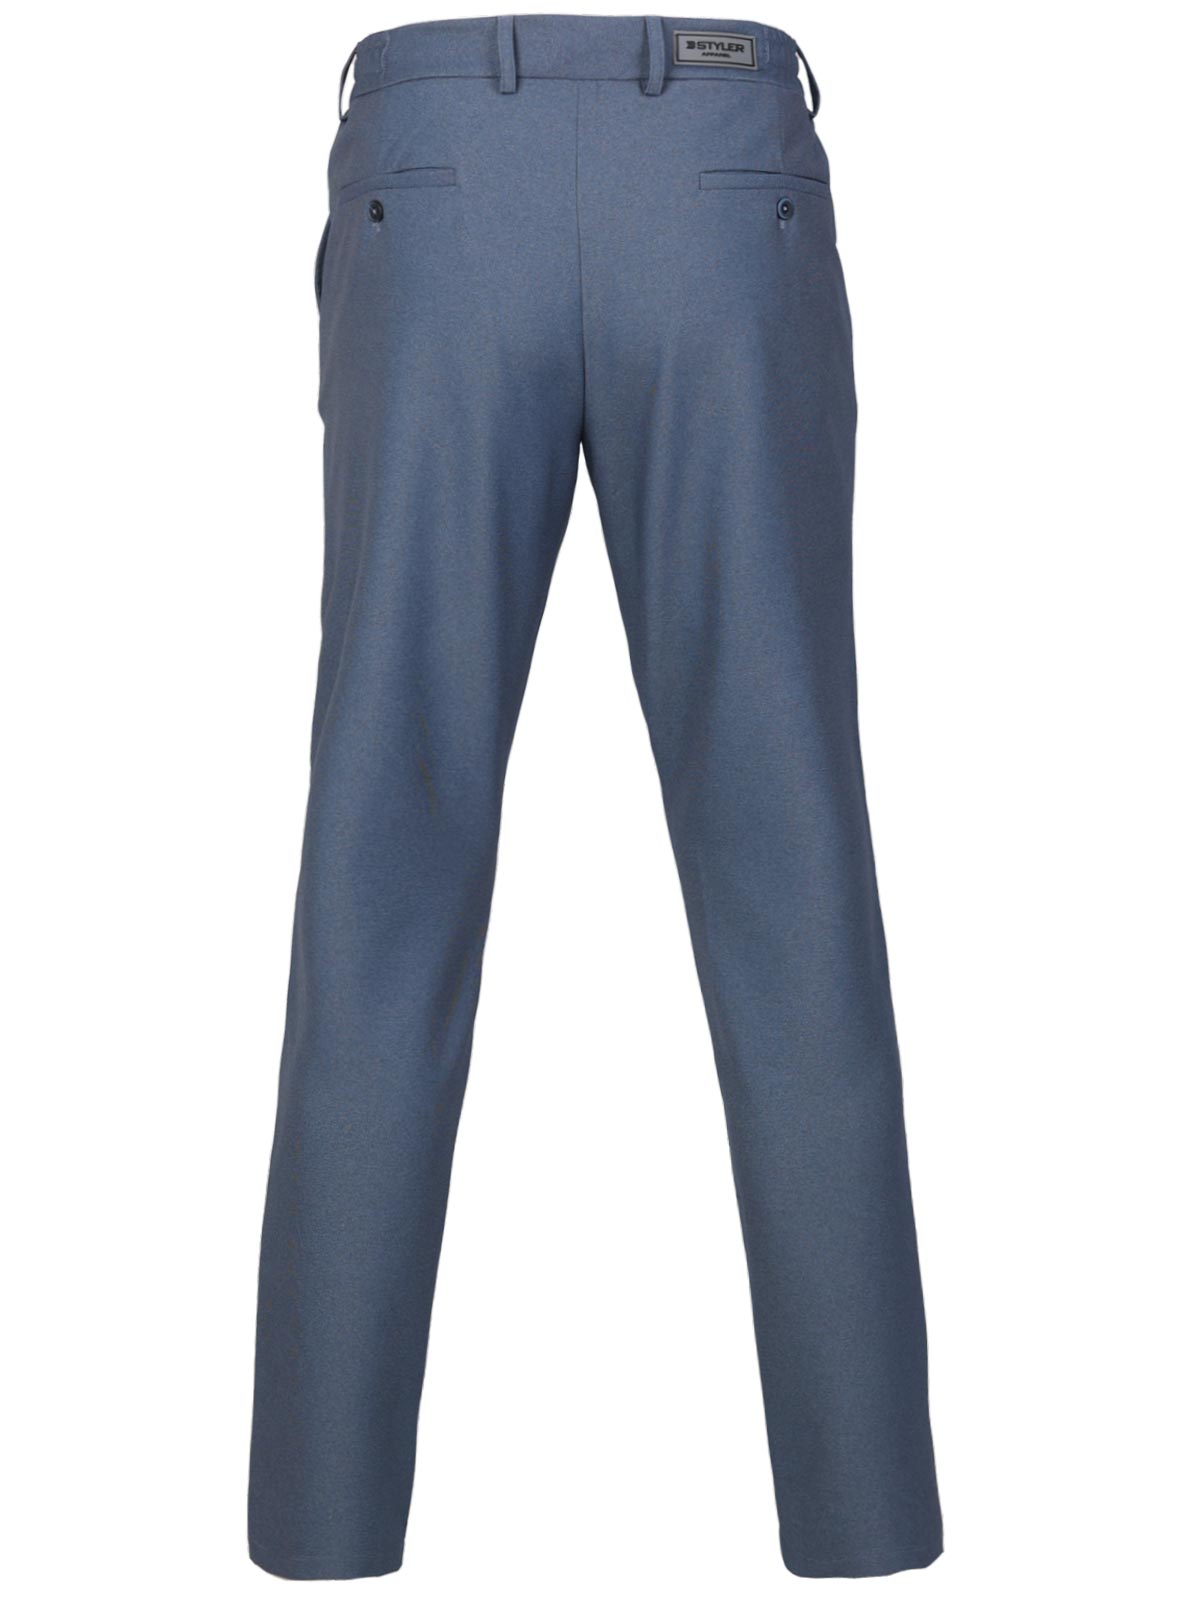 Панталон в средно синьо с връзки - 29012 98.00 лв img2